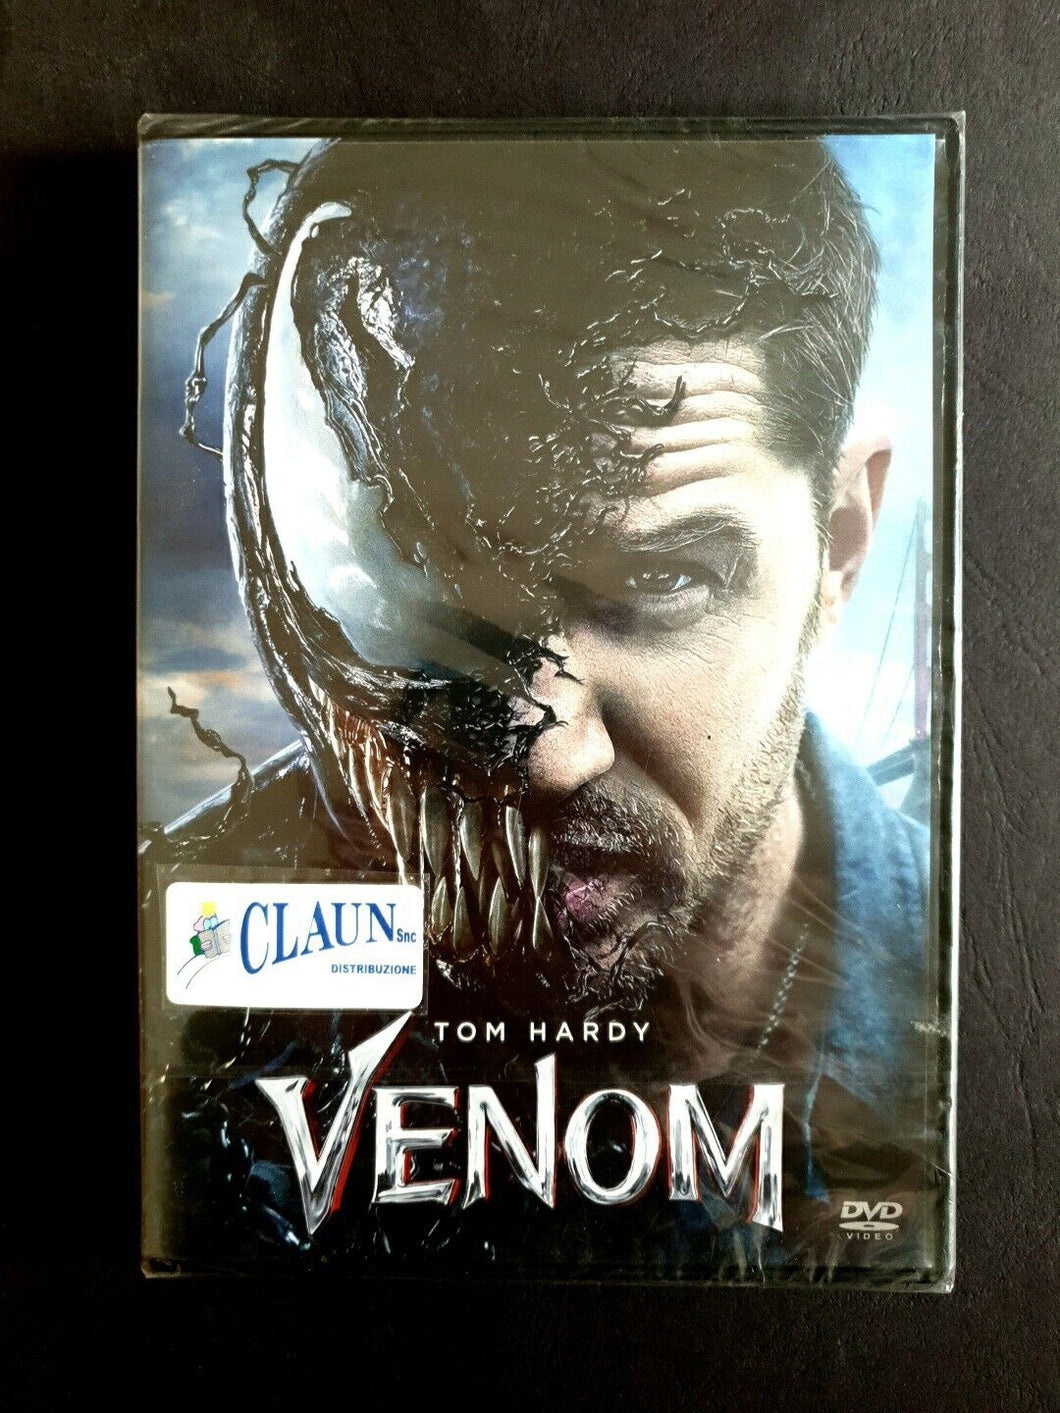 Venom*Tom Hardy*2018 Sony Pictures.contenuti speciali.DVD Nuovo Sigillato